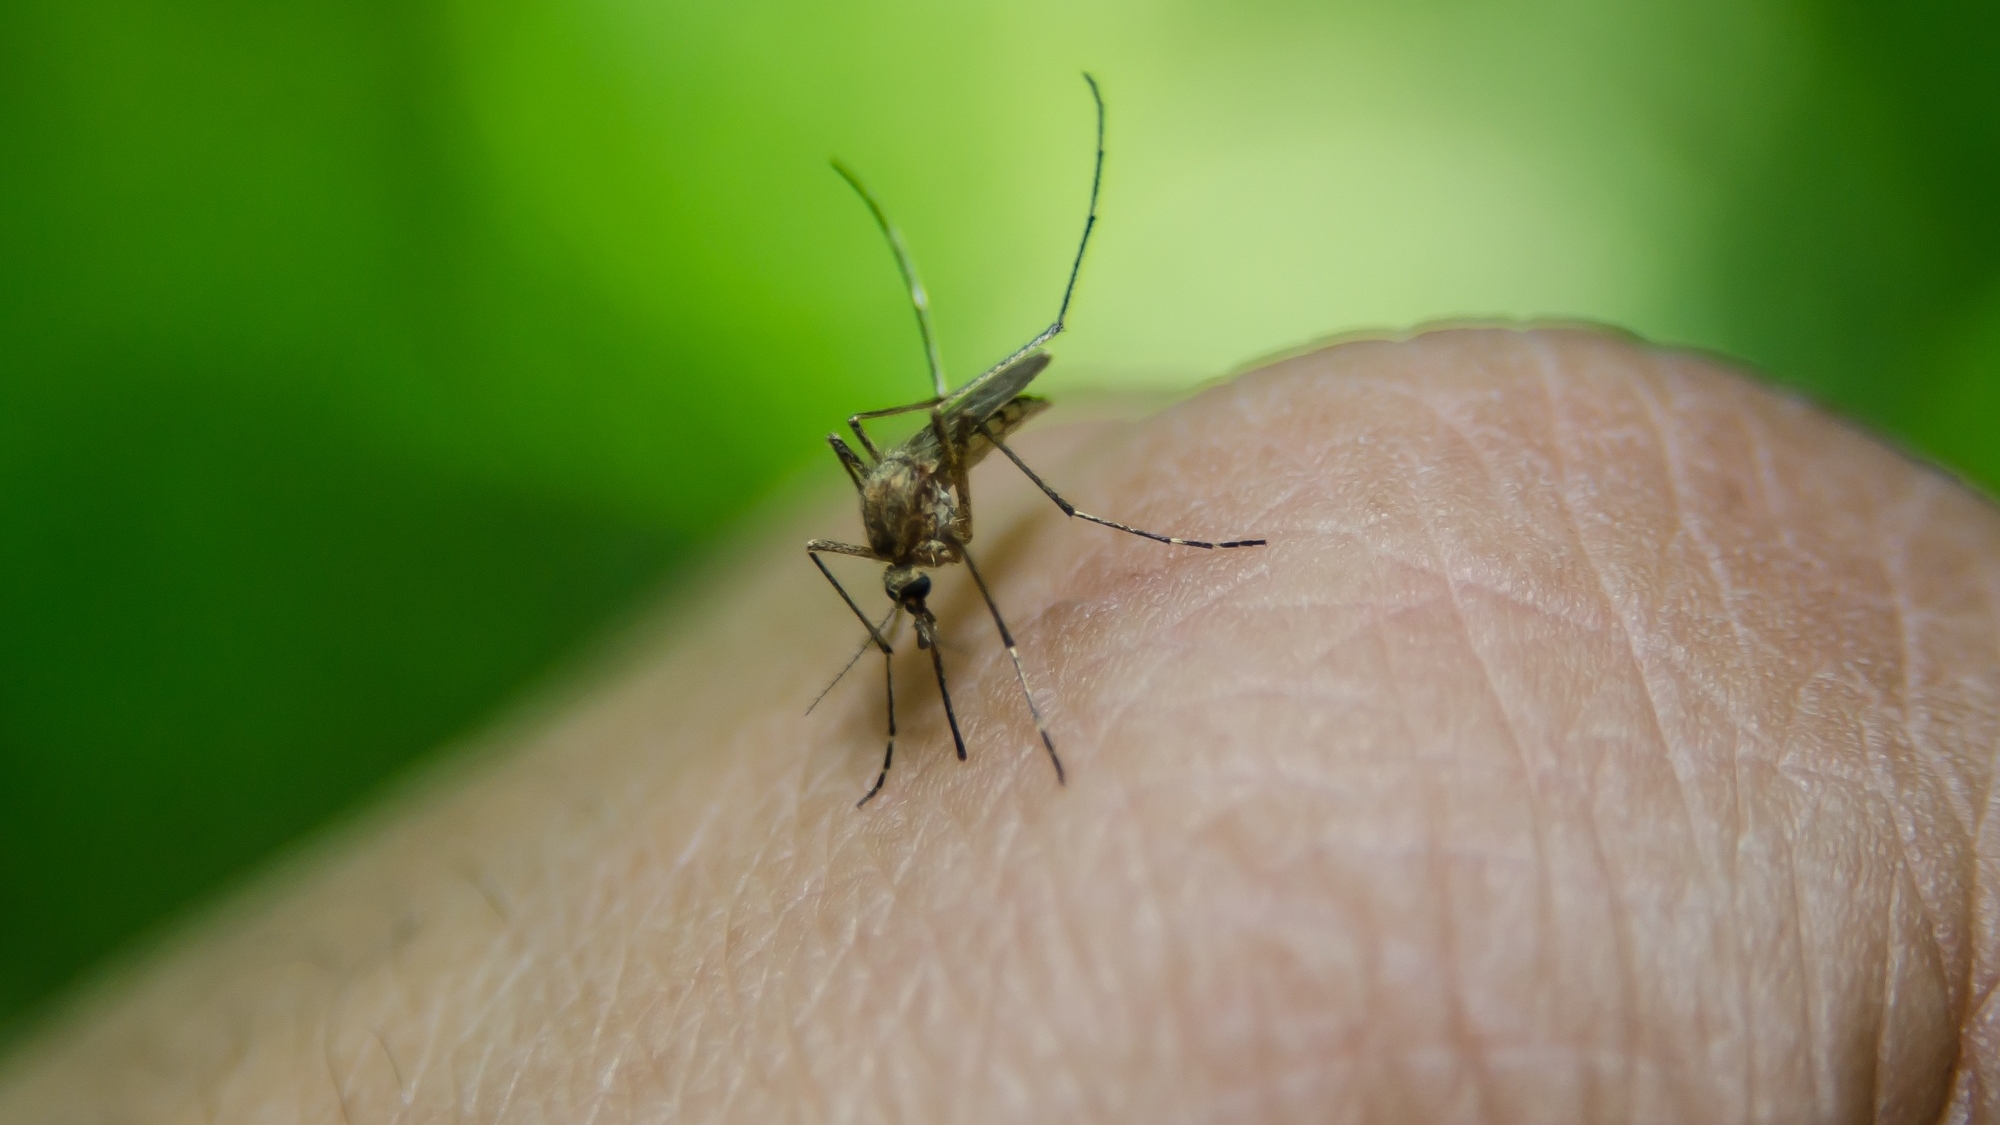 Американские ученые выяснили, каких людей предпочитают кусать комары